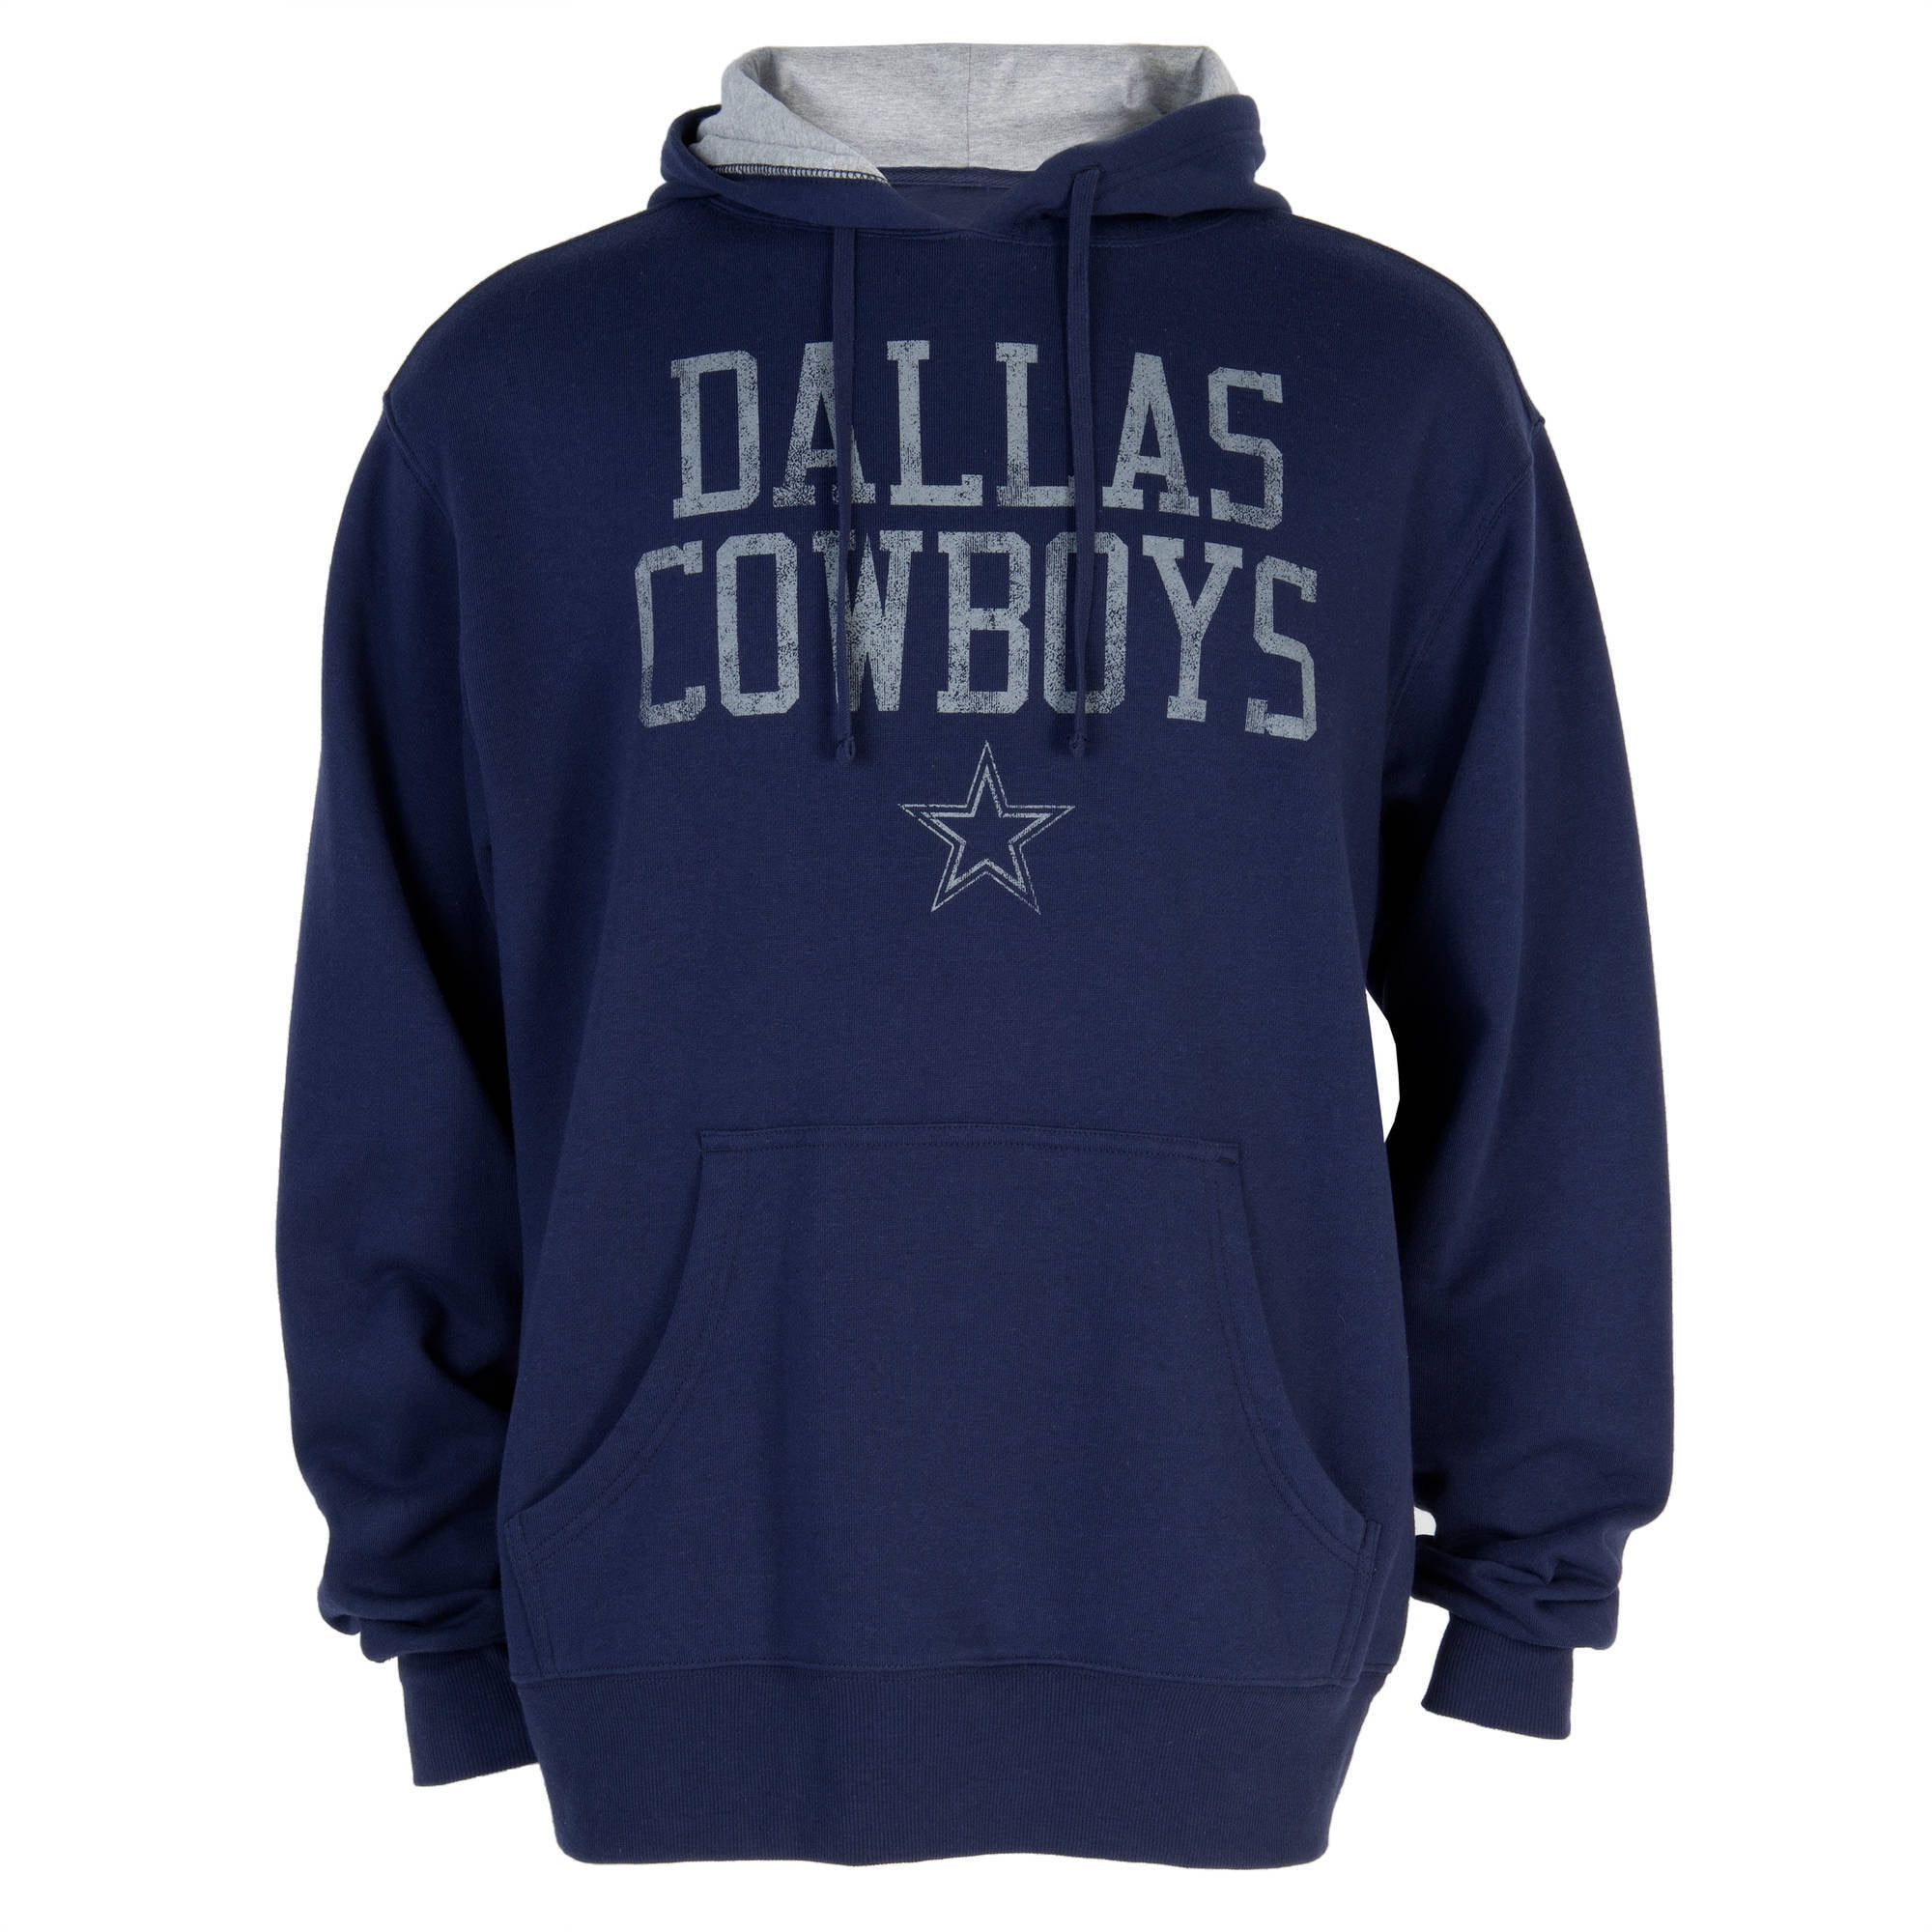 NFL Dallas Cowboys Men's Hoodies - Walmart.com